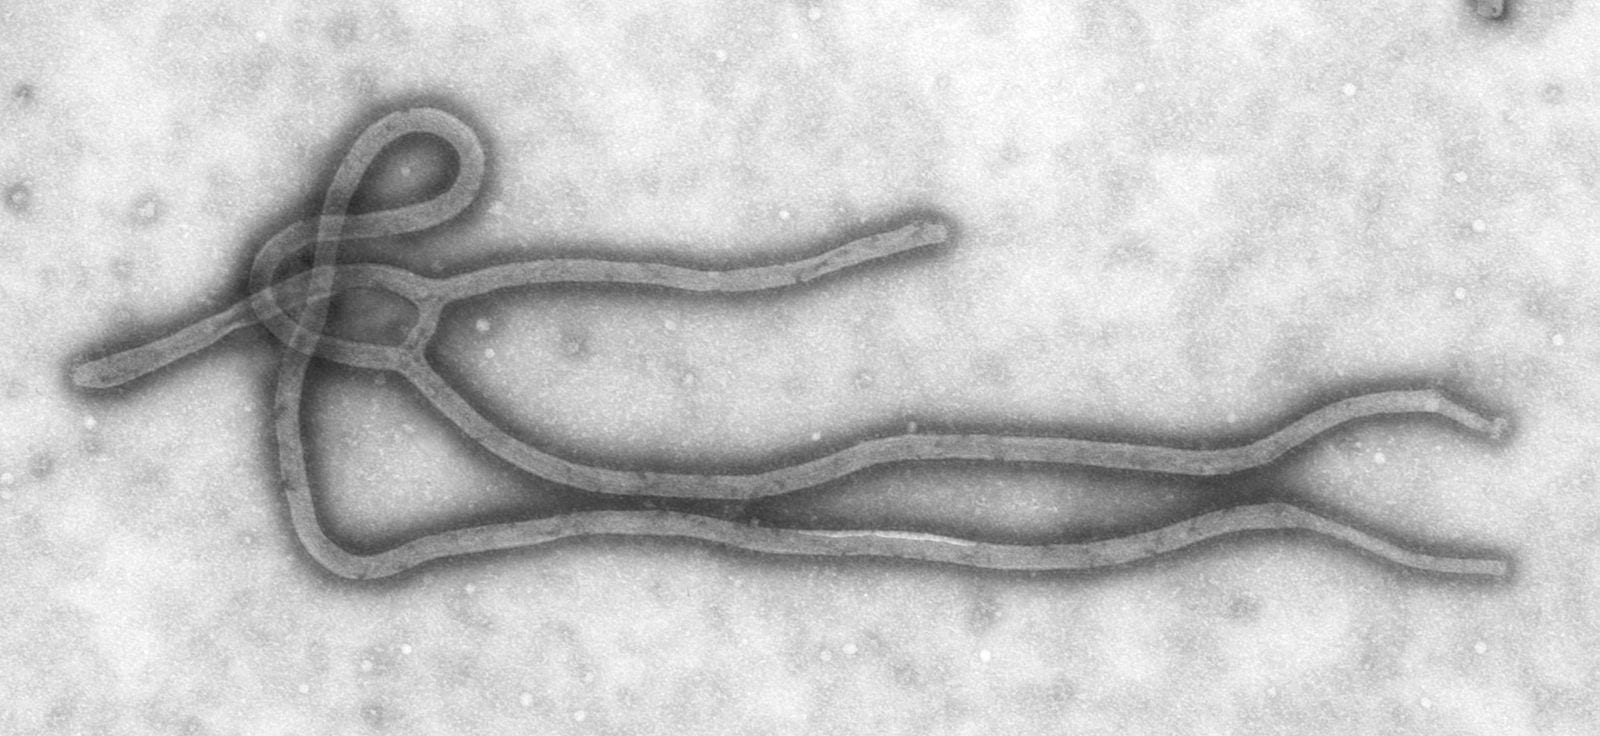 Ebola_Virus_TEM_PHIL_1832_lores